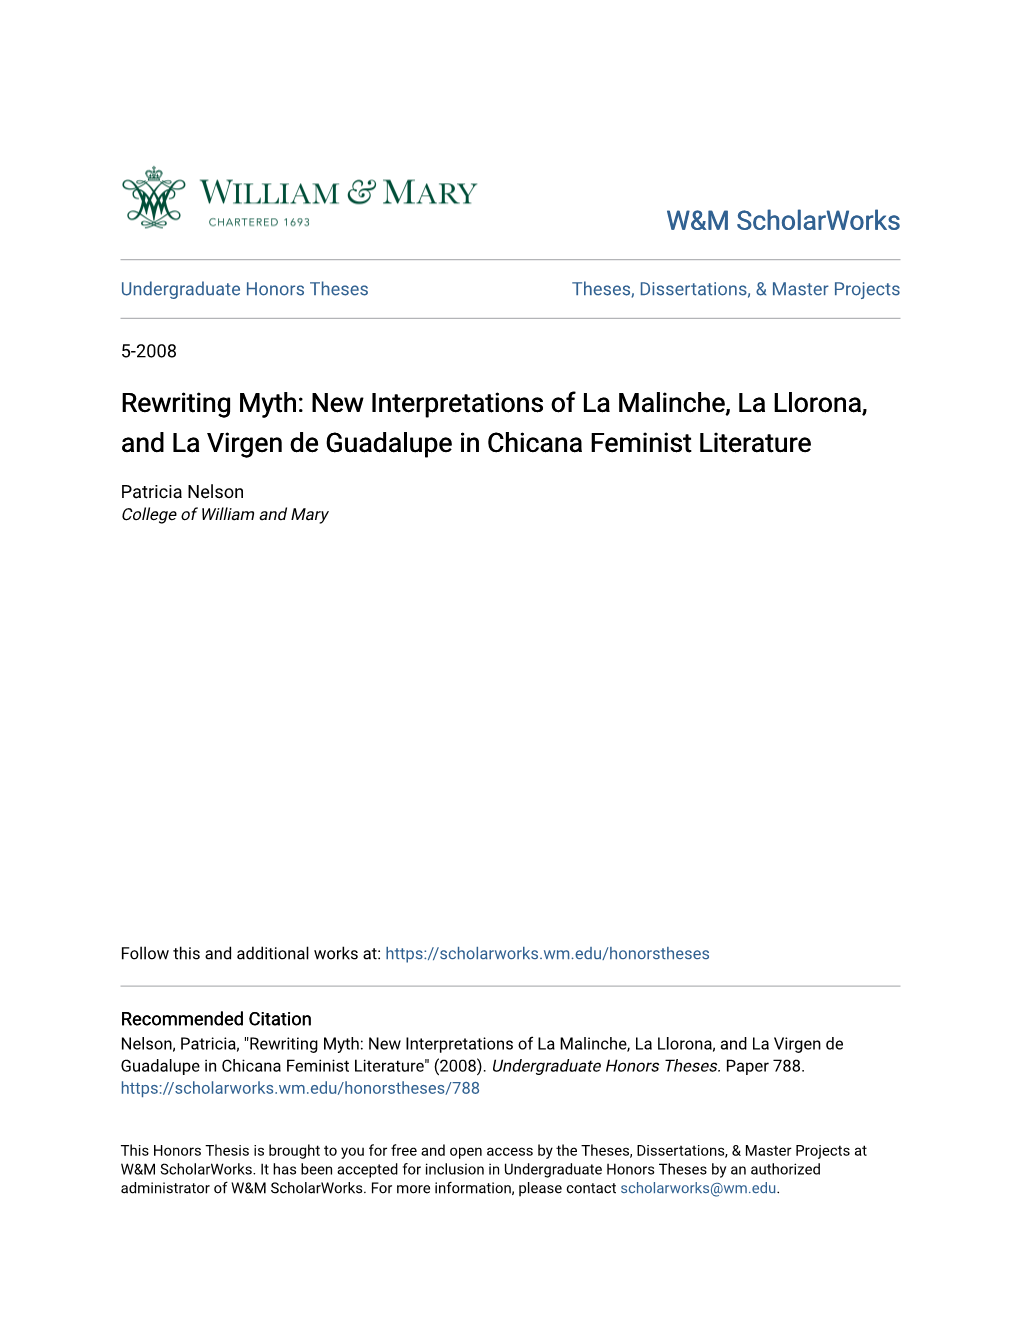 New Interpretations of La Malinche, La Llorona, and La Virgen De Guadalupe in Chicana Feminist Literature